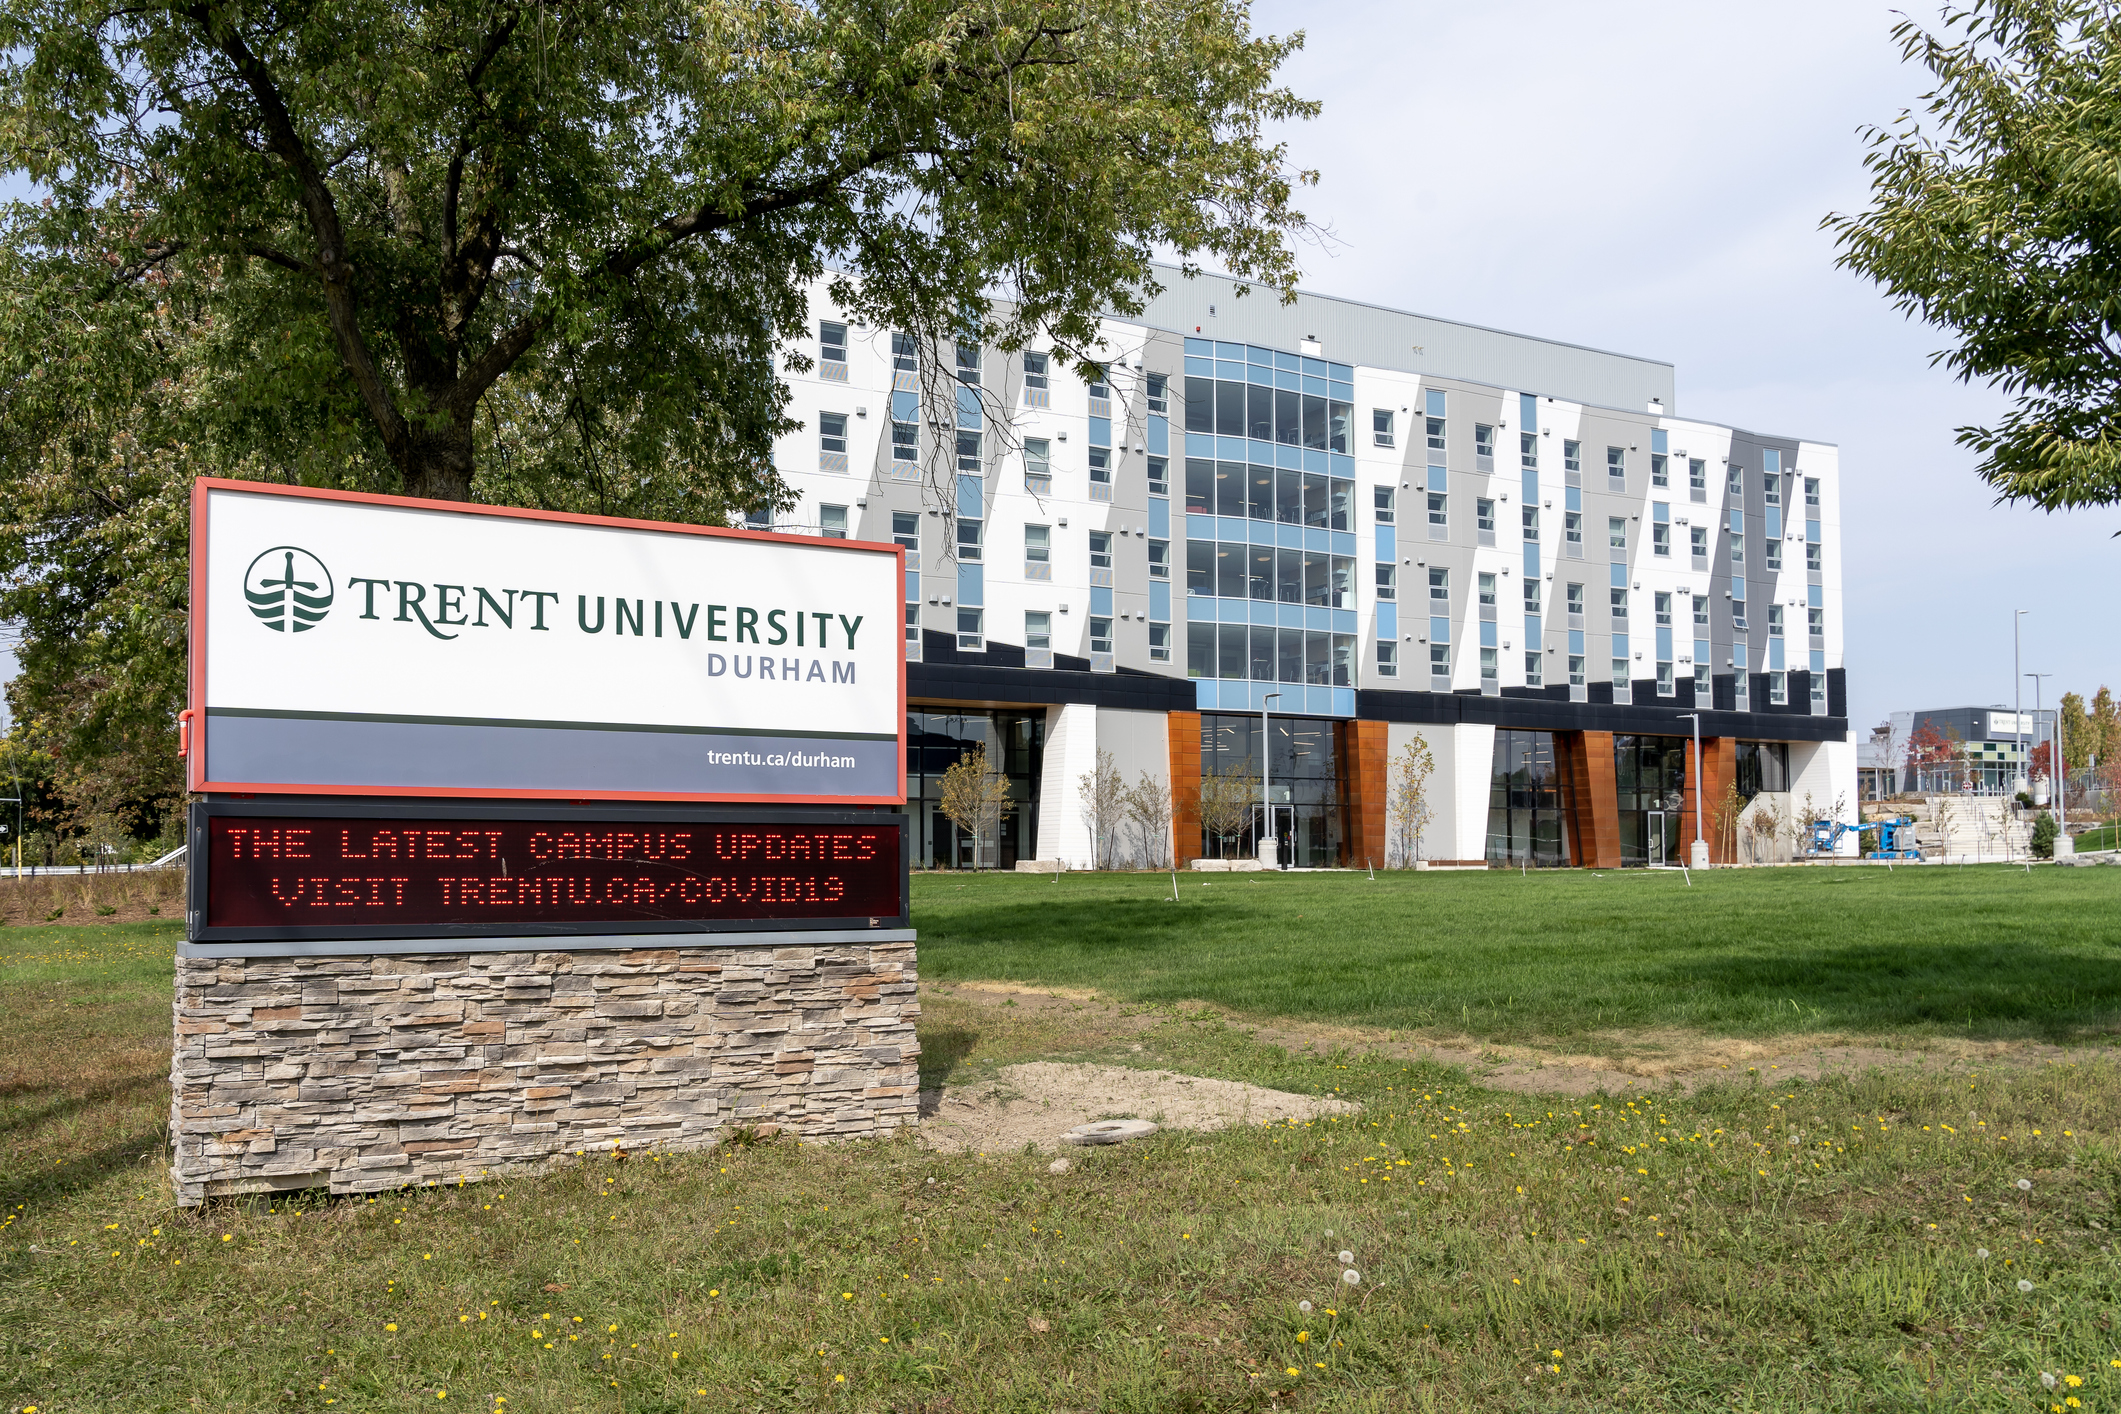 Oshawa, Ontario, Canada - September 26, 2020: Trent University Durham GTA is shown in Oshawa, Ontario, Canada on September 26, 2020. Trent University is a public liberal arts university.